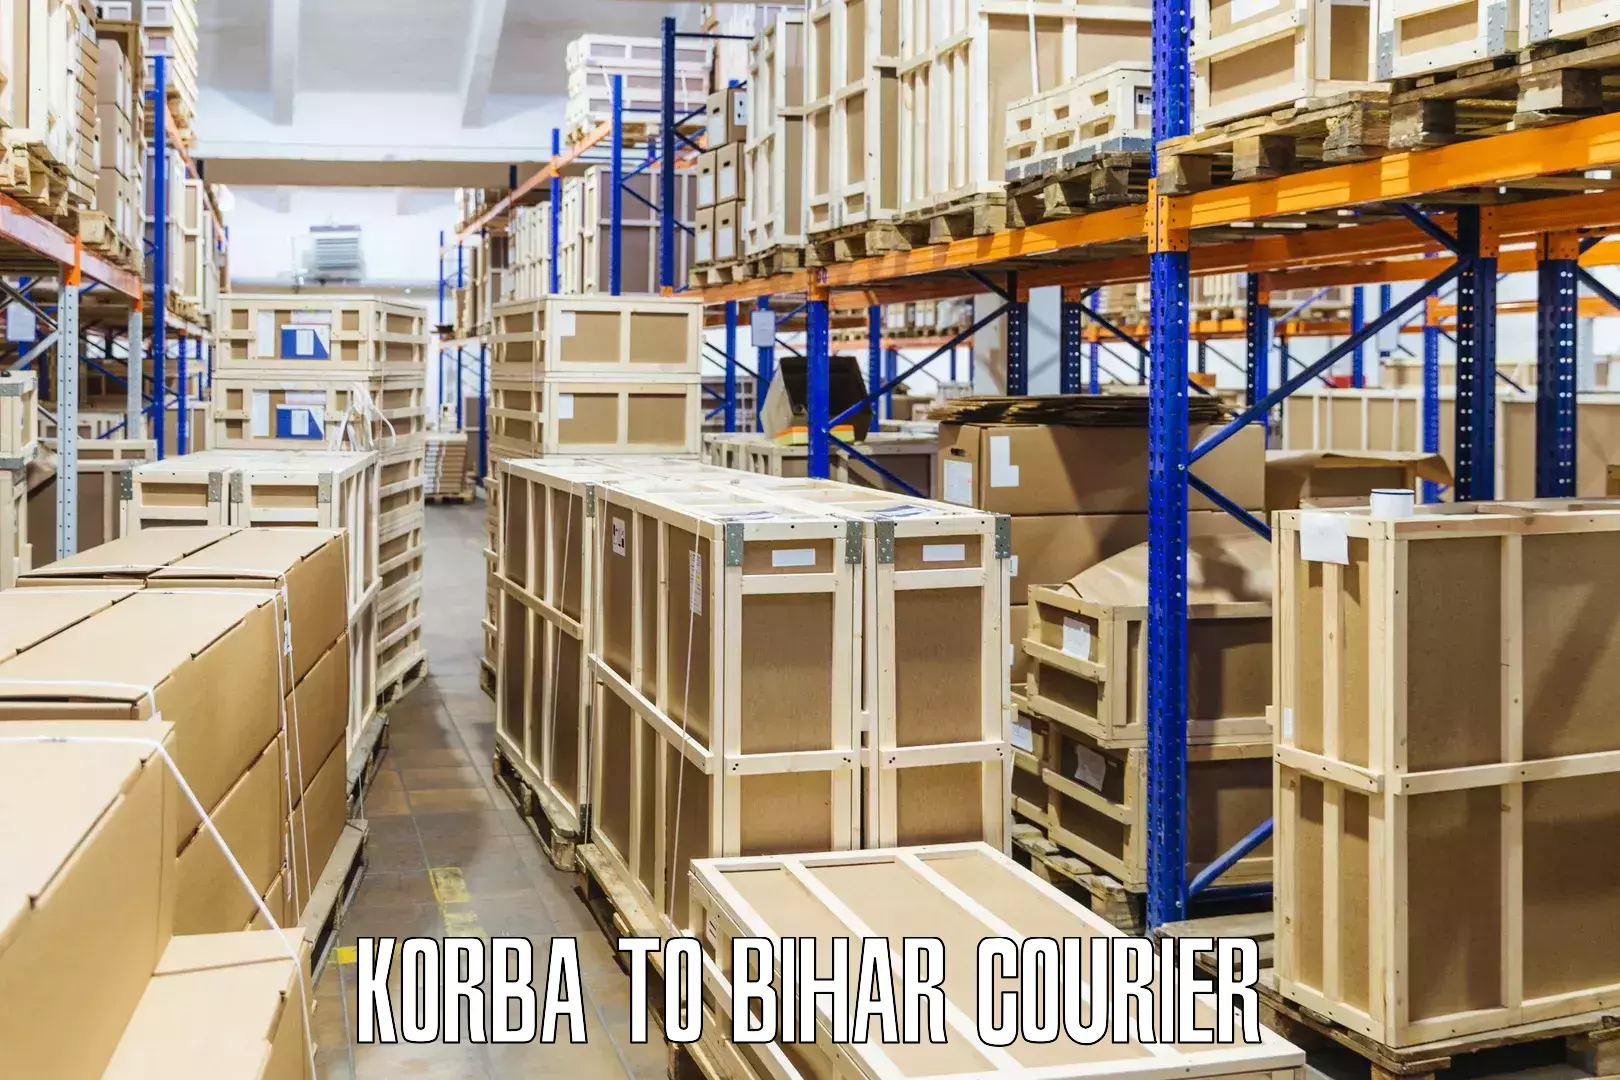 Customizable shipping options in Korba to Biraul